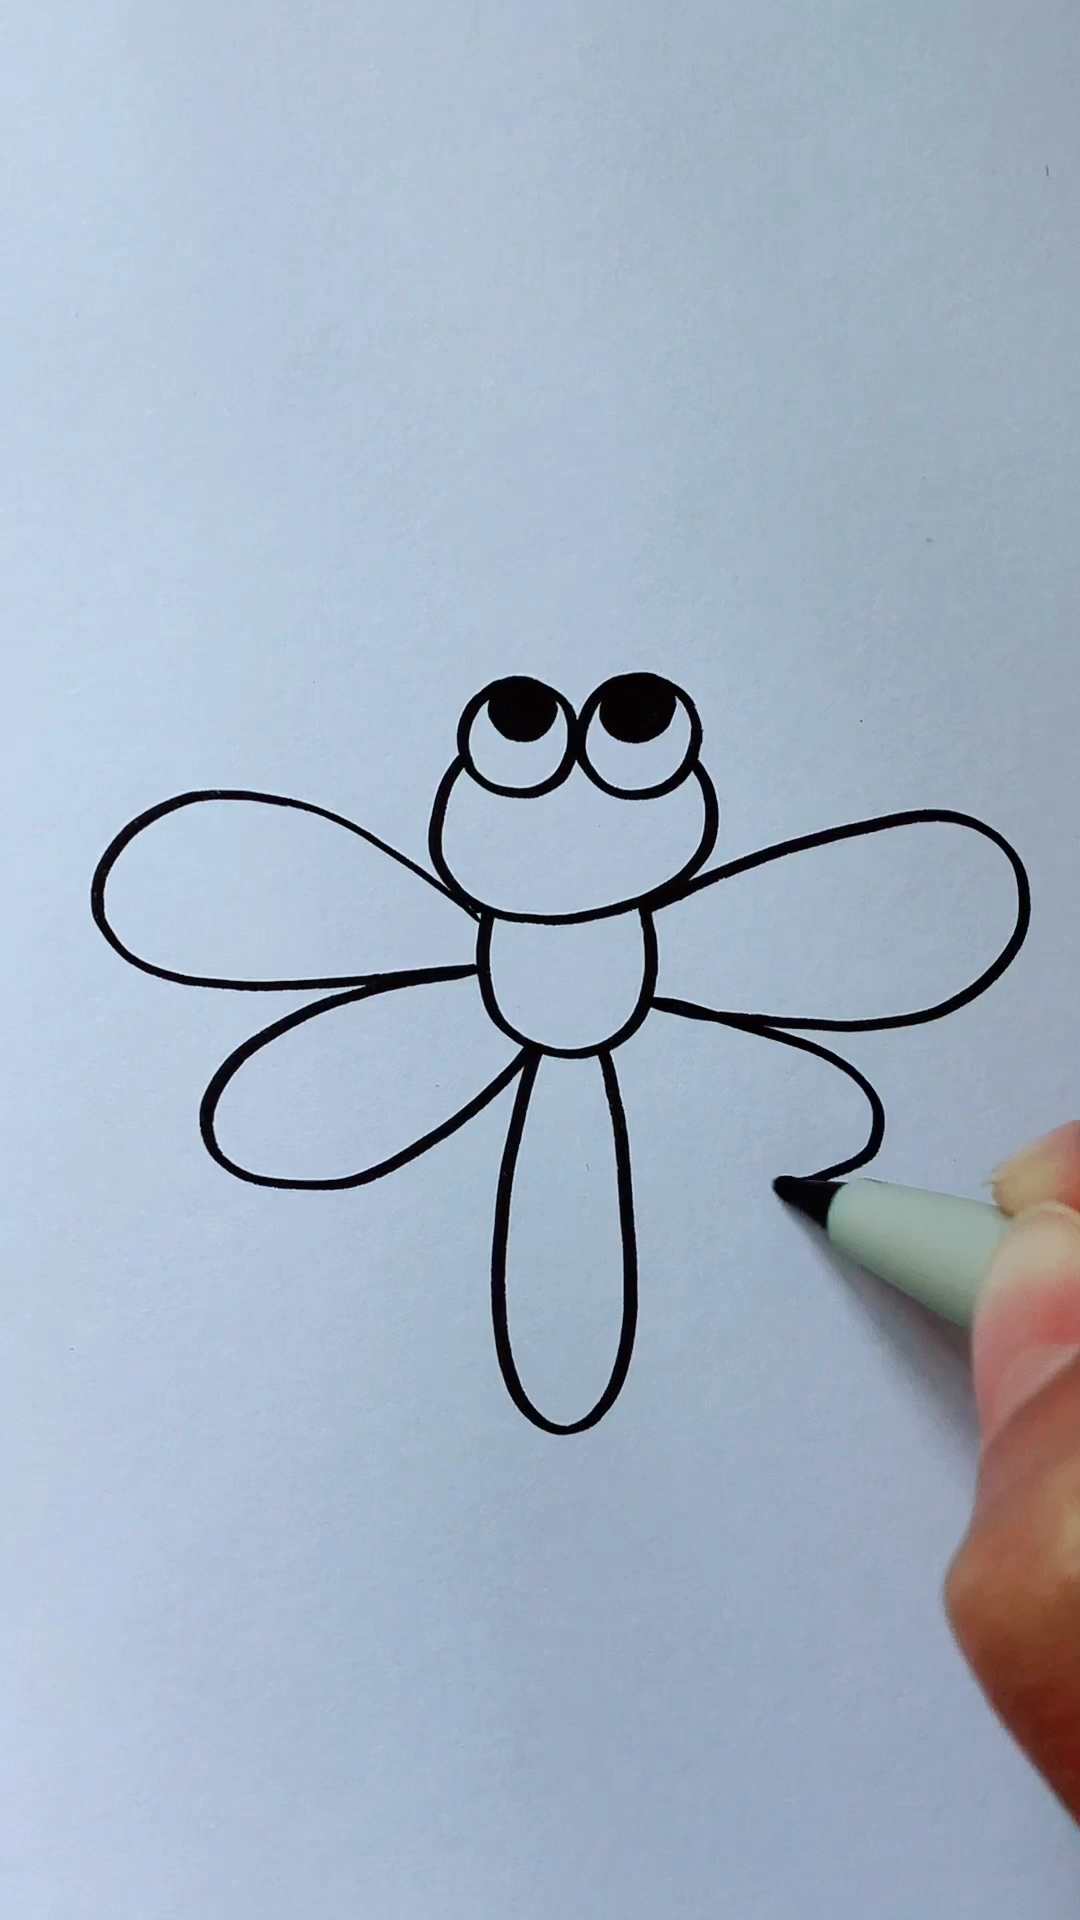 小蜻蜓简笔画 简易图片